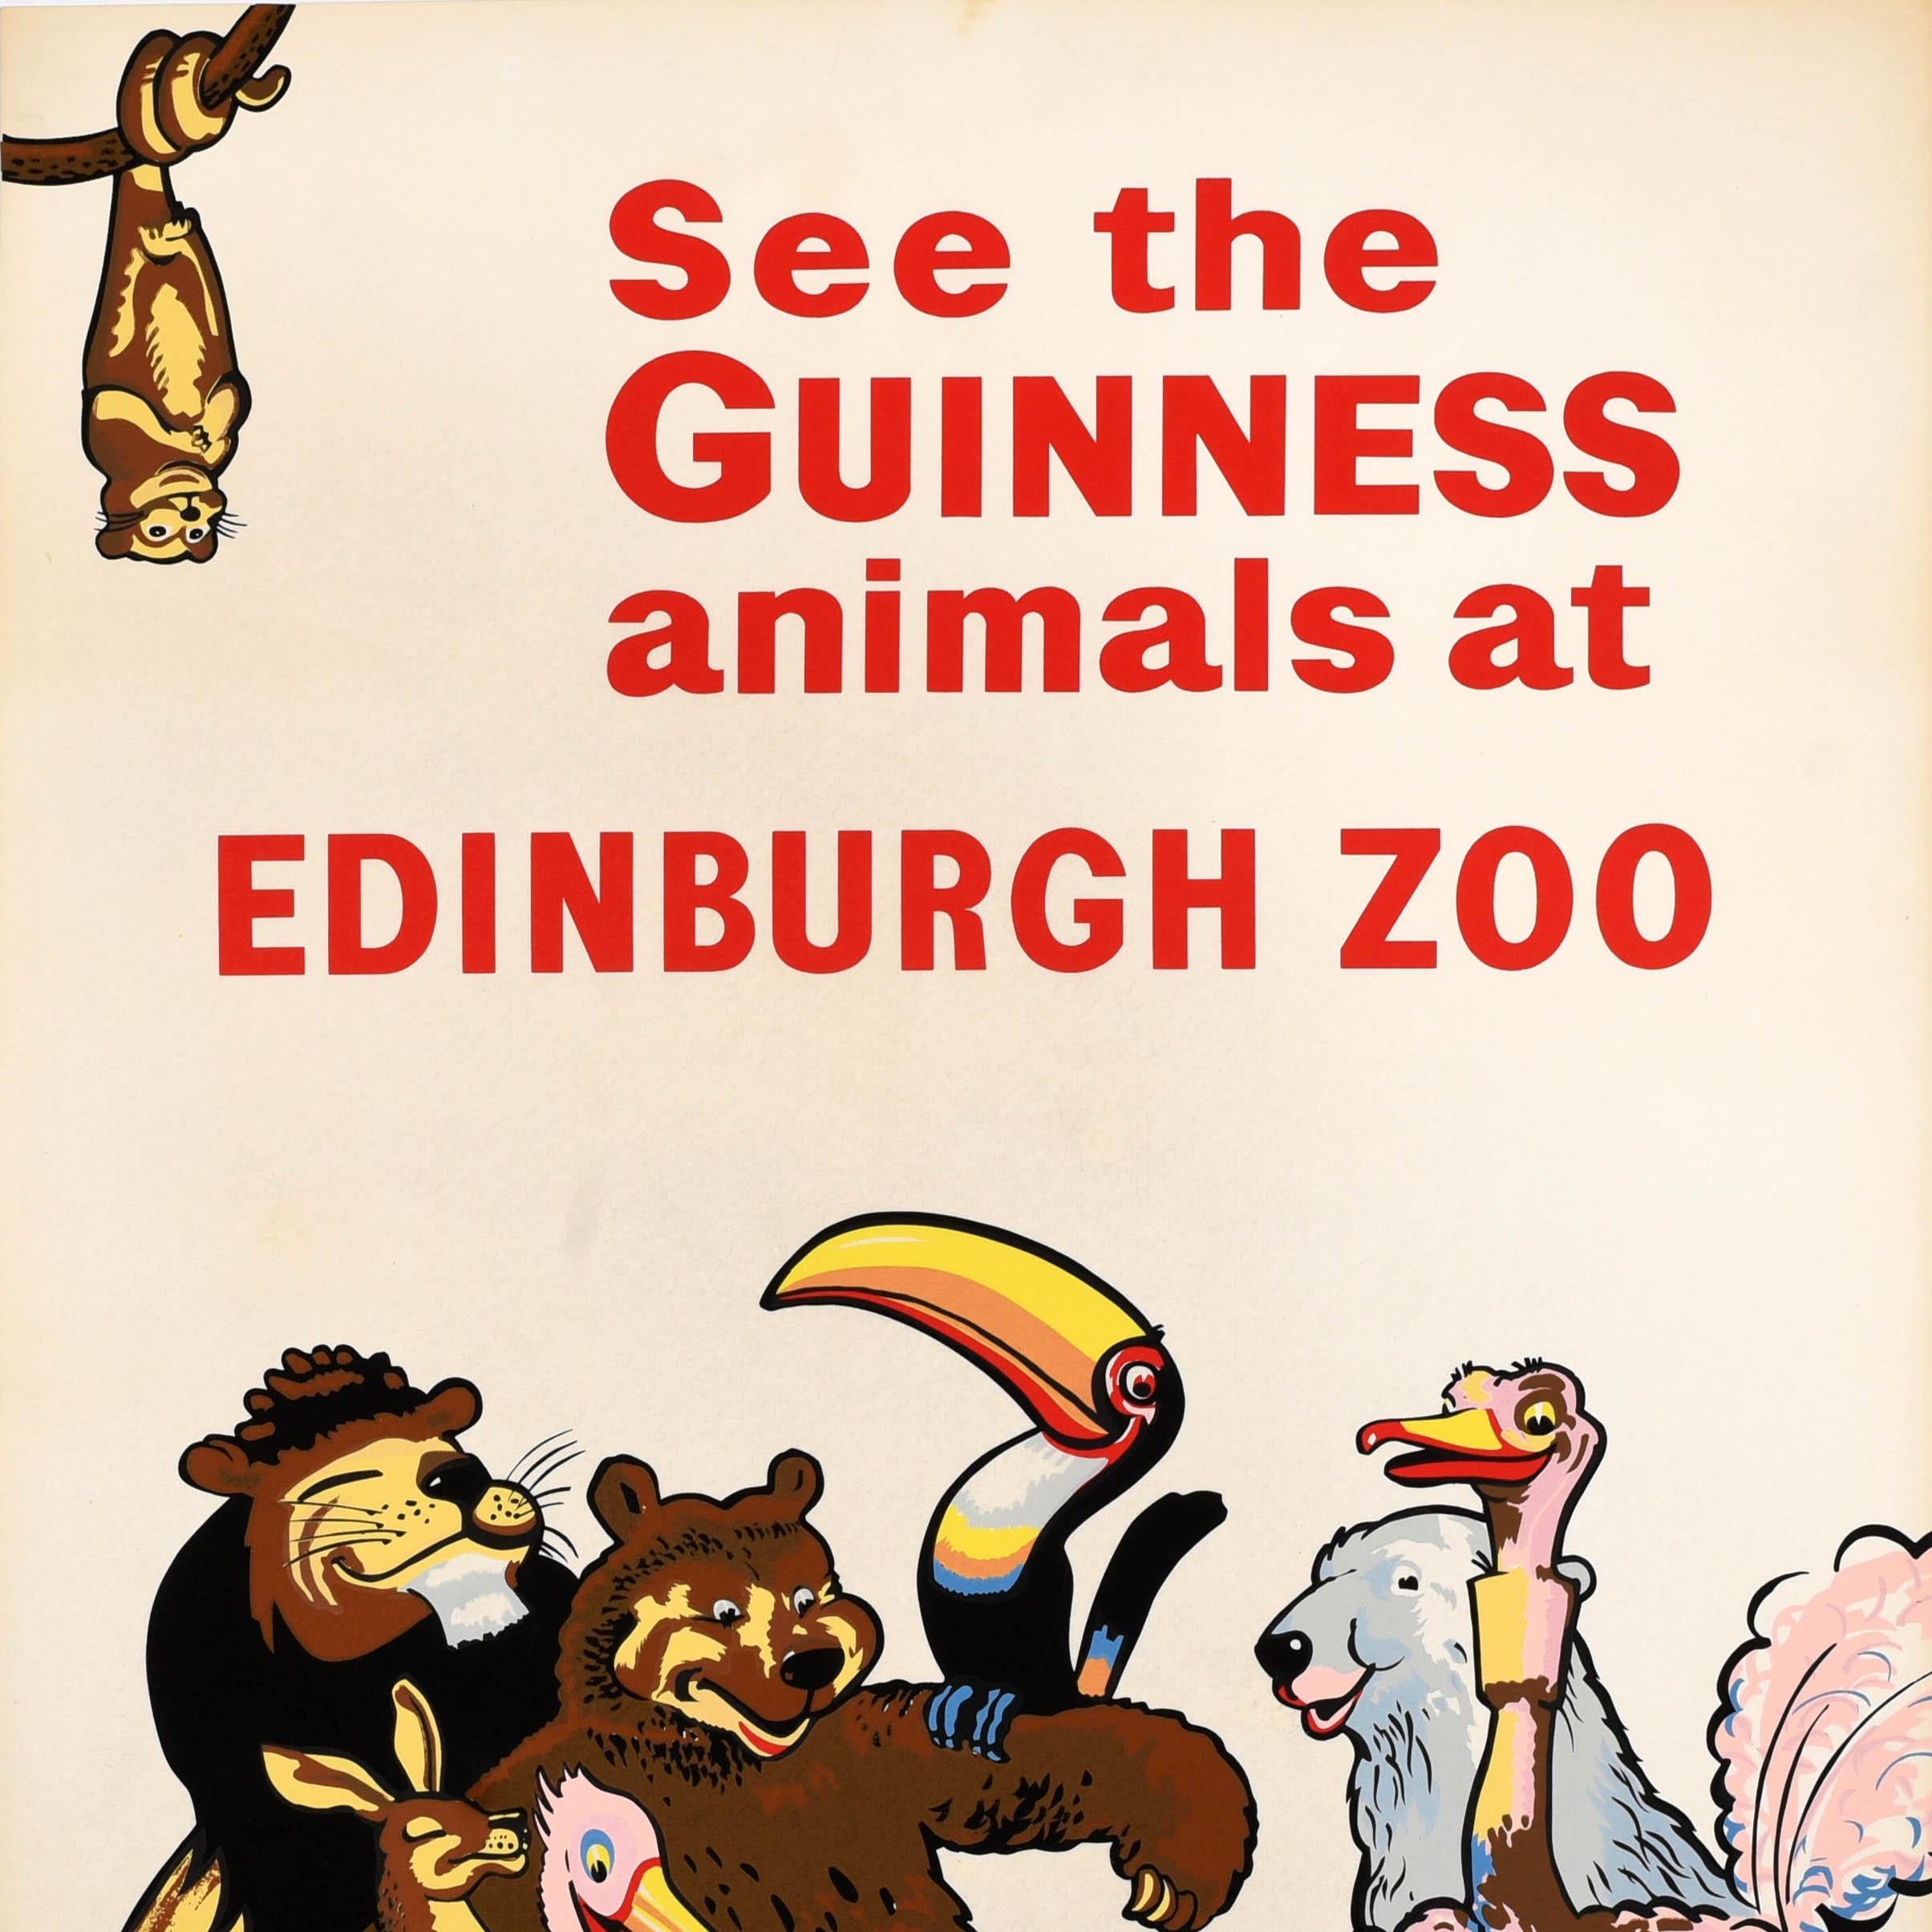 Affiche publicitaire vintage originale pour Guinness - See the Guinness Animals at Edinburgh Zoo - présentant une image amusante et colorée de tous les animaux emblématiques de Guinness rassemblés autour d'un gardien de zoo portant un uniforme et